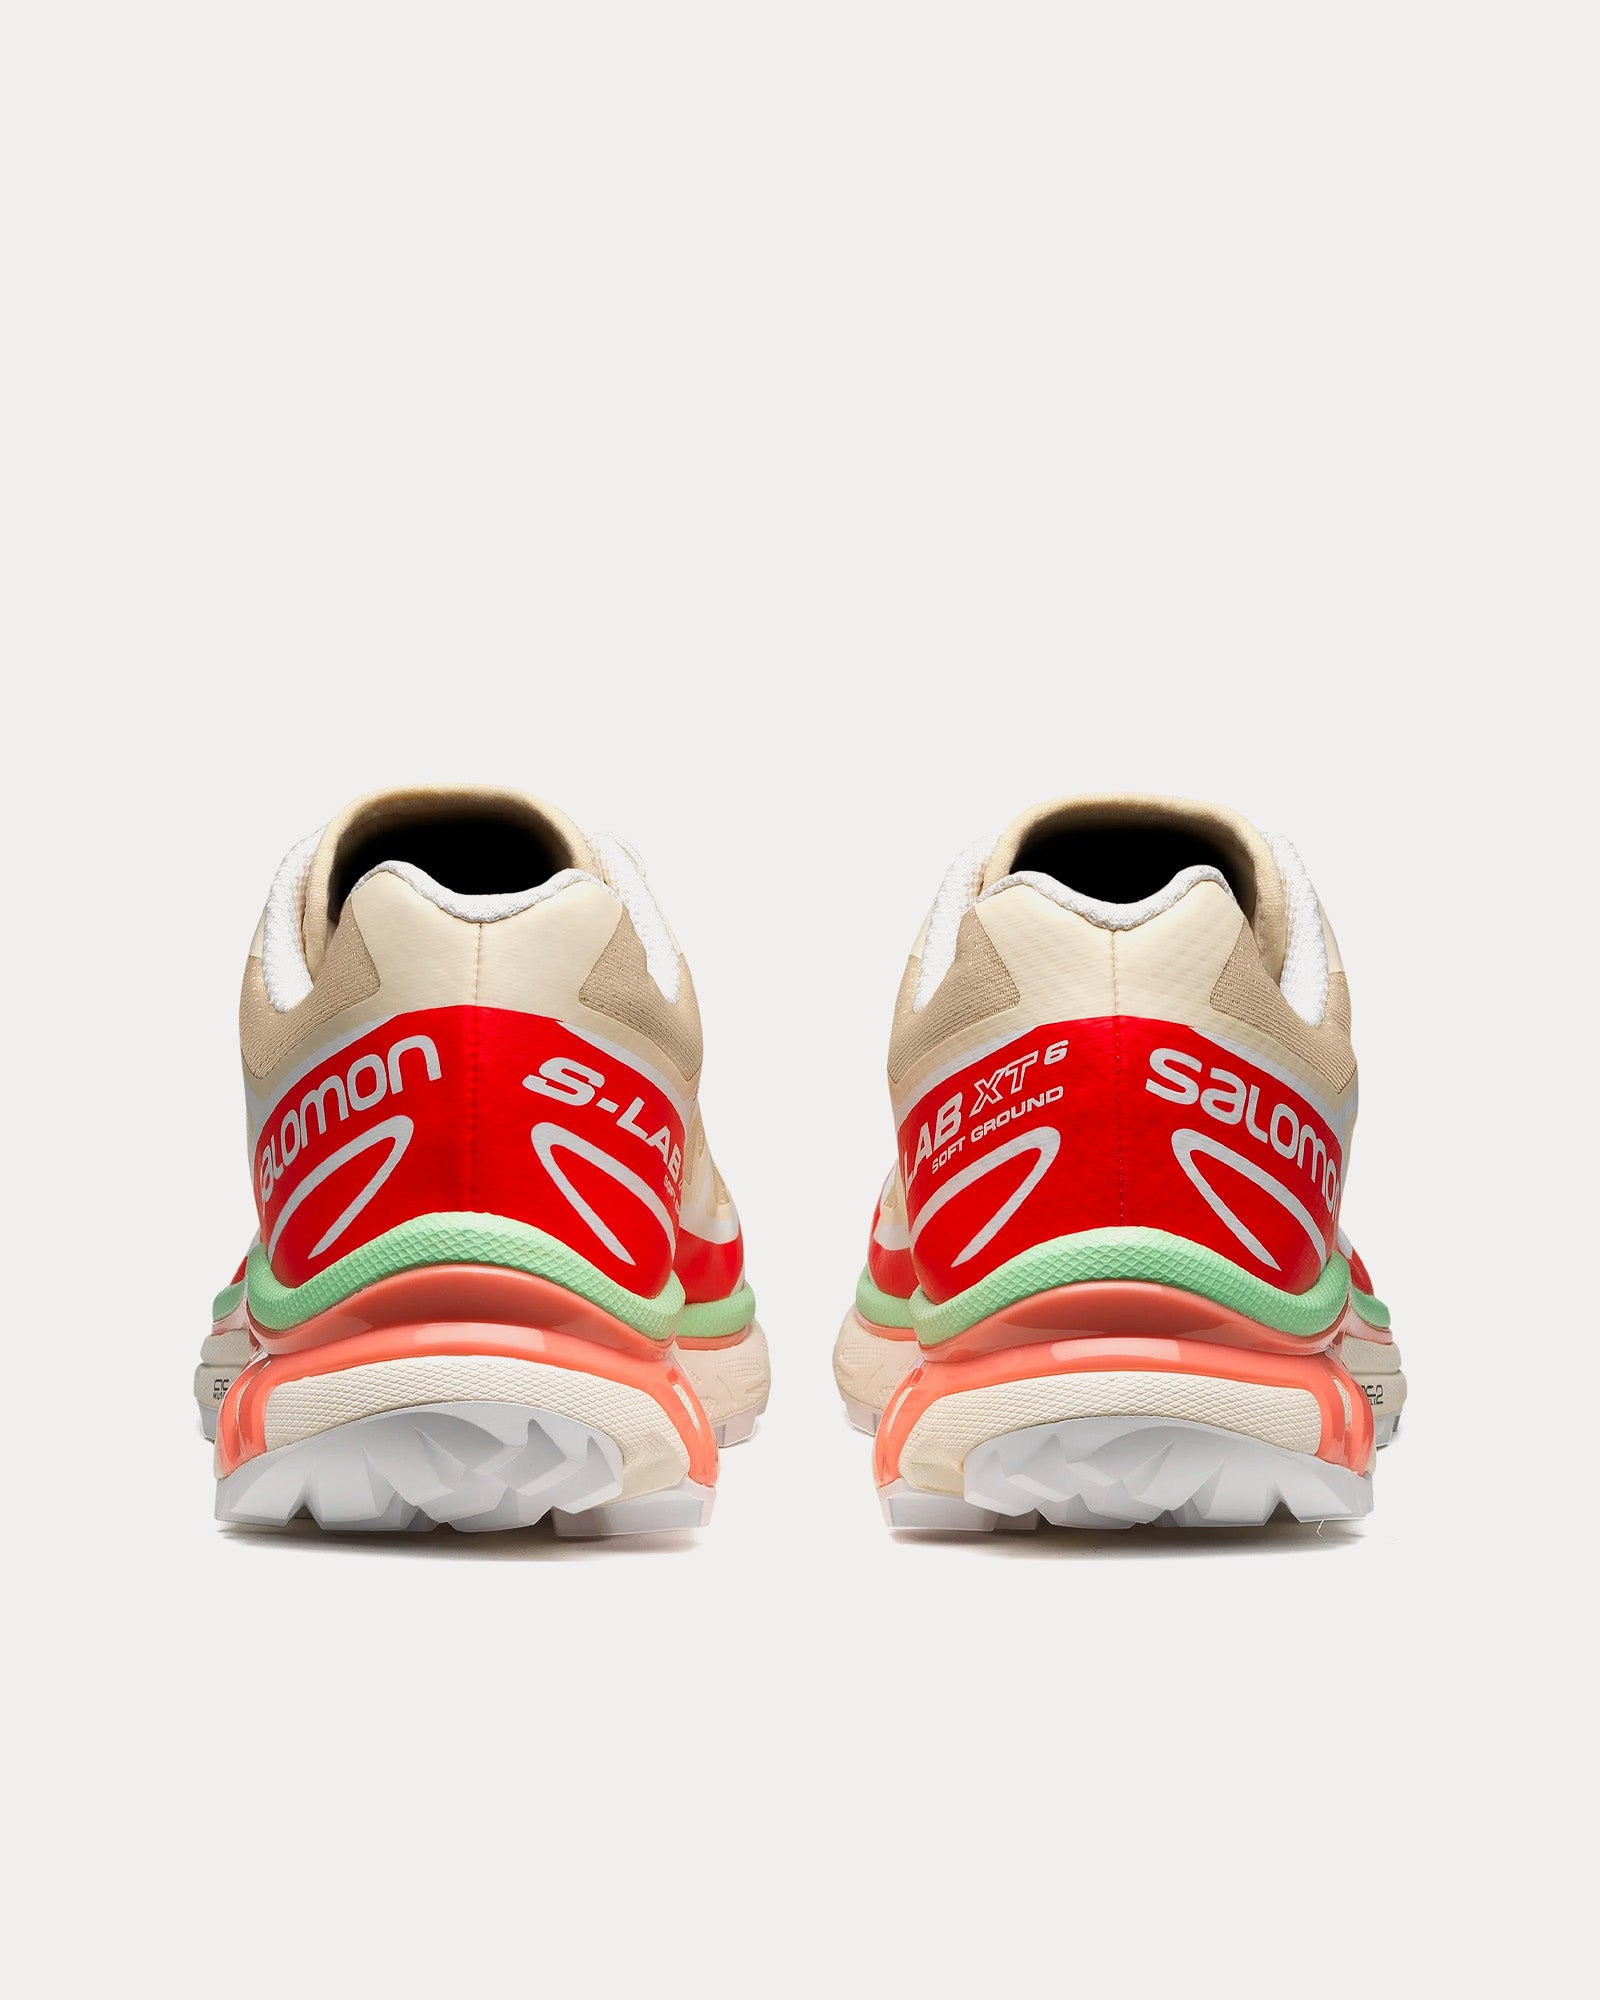 Salomon - XT-6 Shortbread / Poppy Red / Green Ash Low Top Sneakers